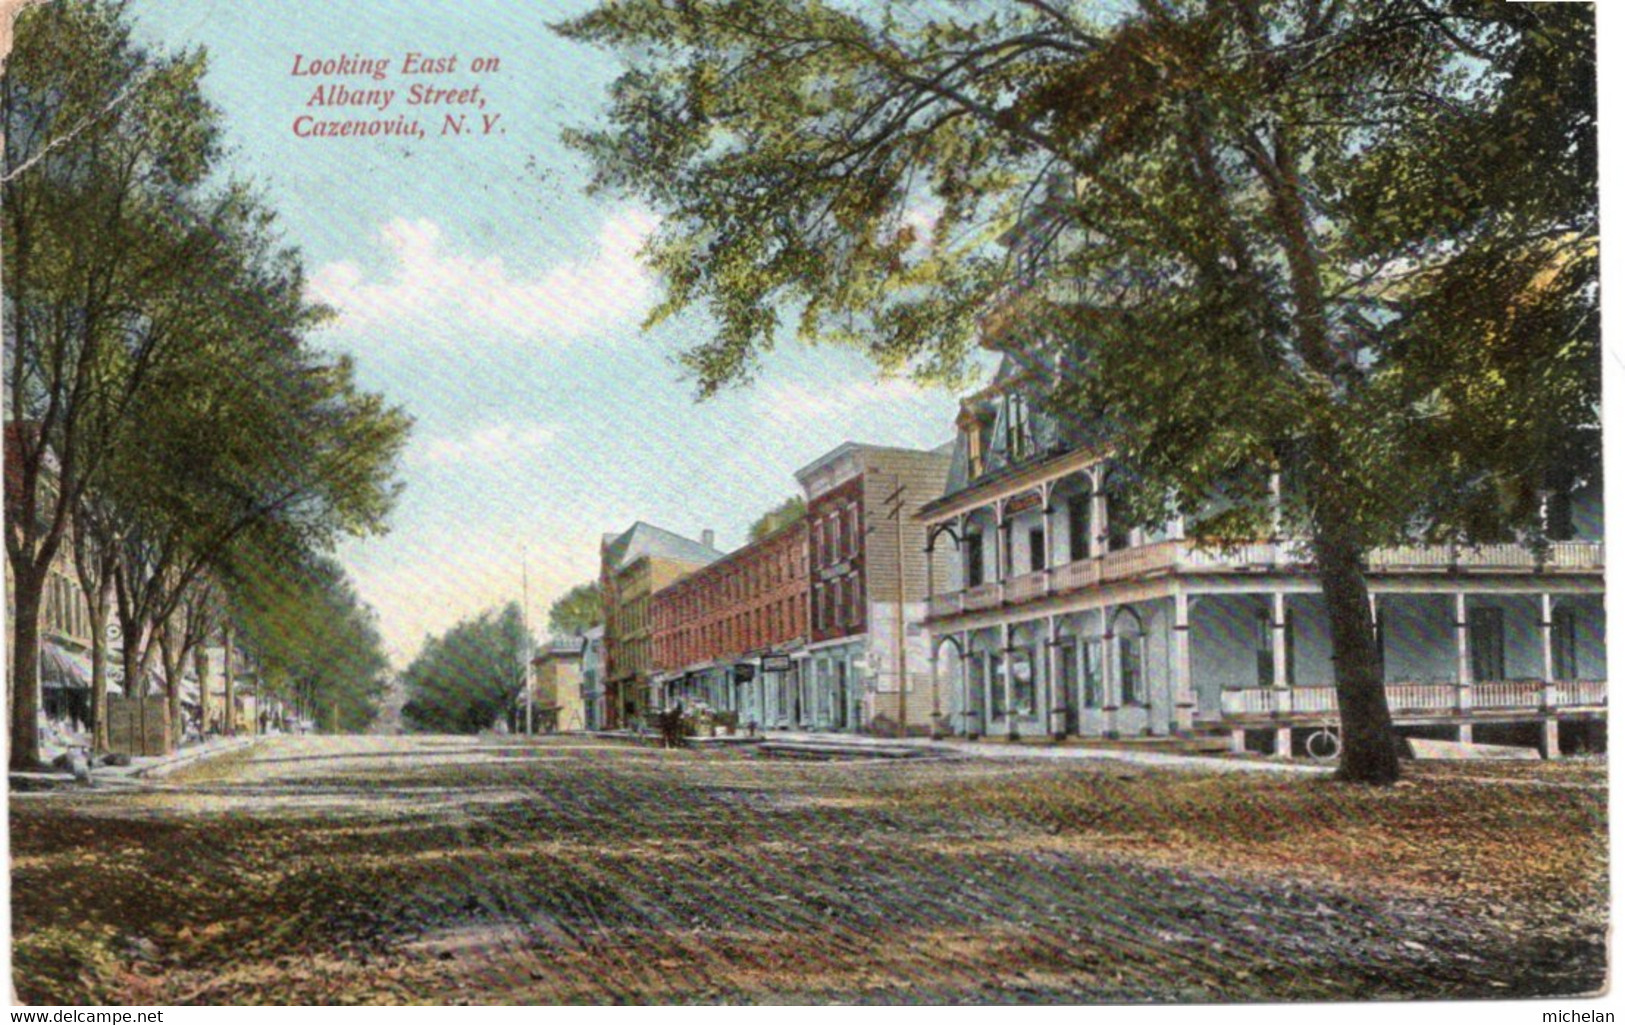 CPA   ETATS-UNIS---LOOHING EAST ON ALBANY STREET, CAZENOVIA 1908 - Albany